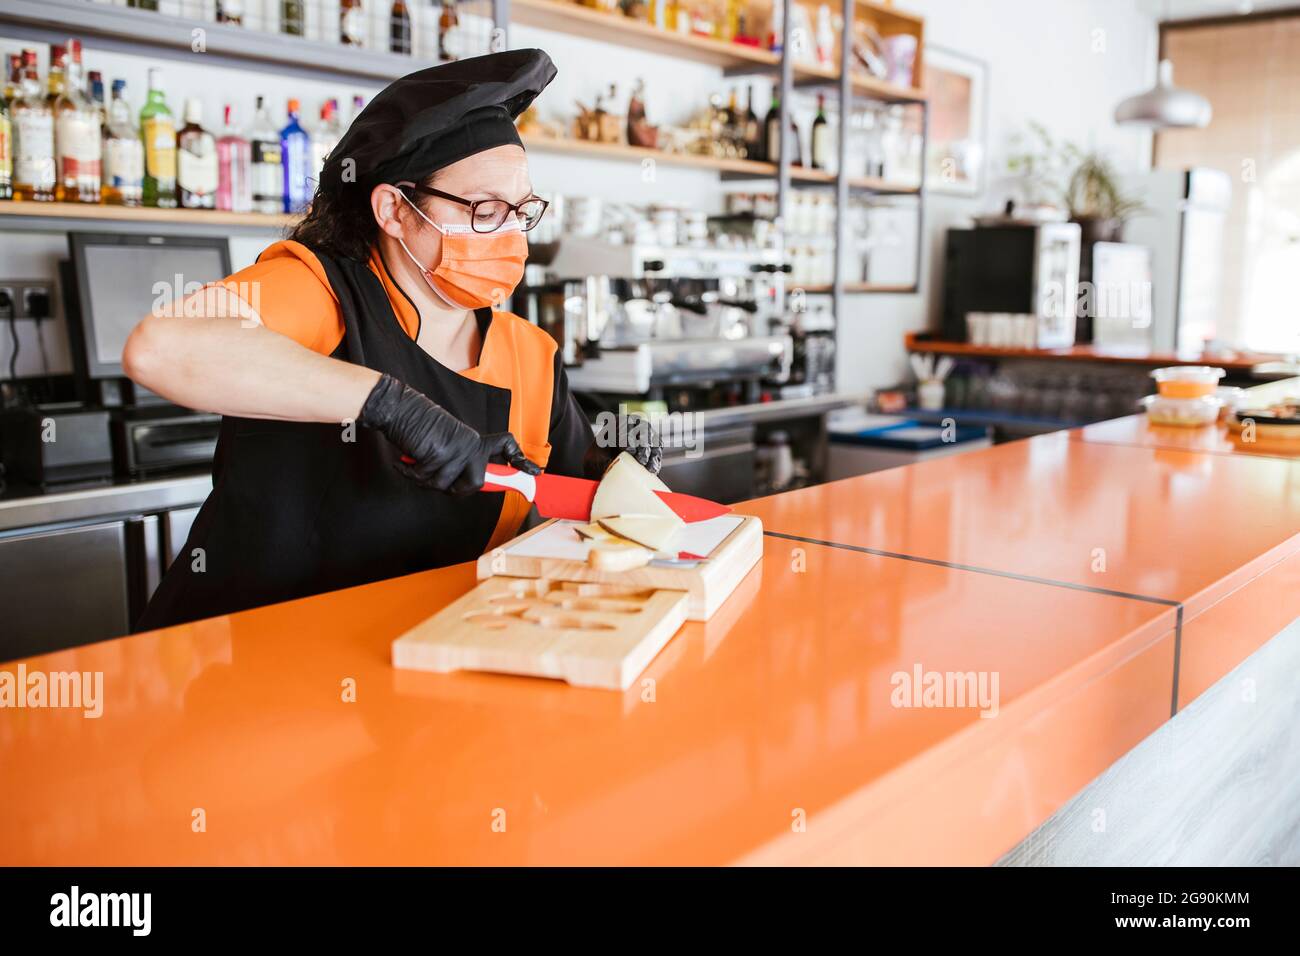 Chef mujer cortando queso manchego en el mostrador durante la pandemia Foto de stock